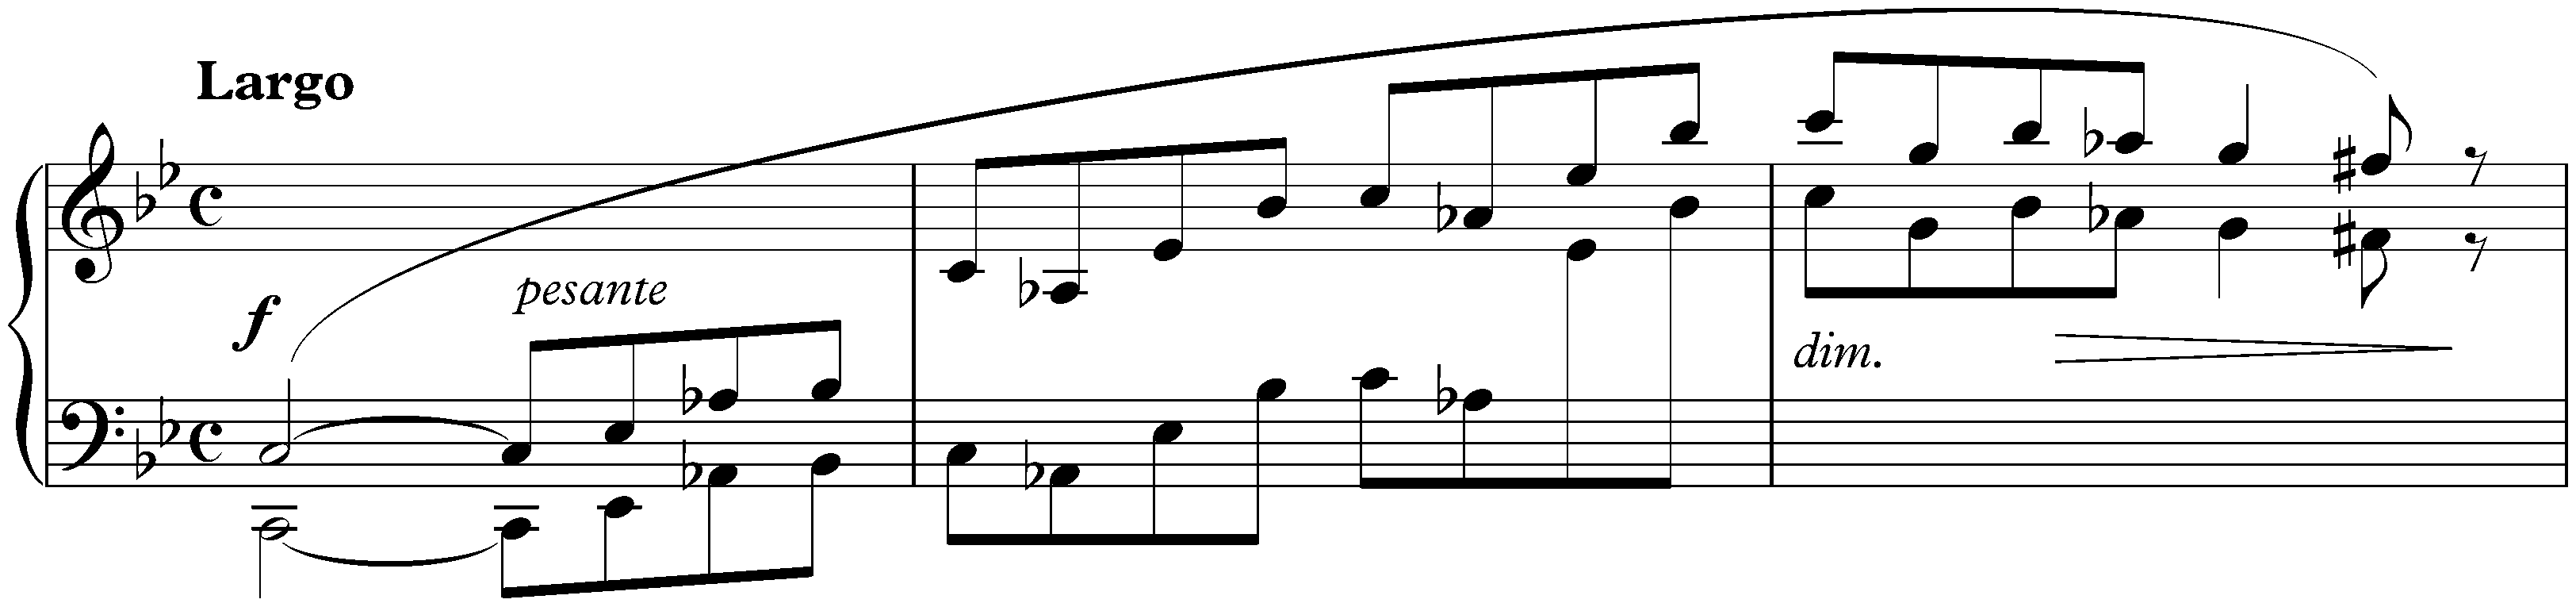 Ballade no. 1 in G minor, op. 23